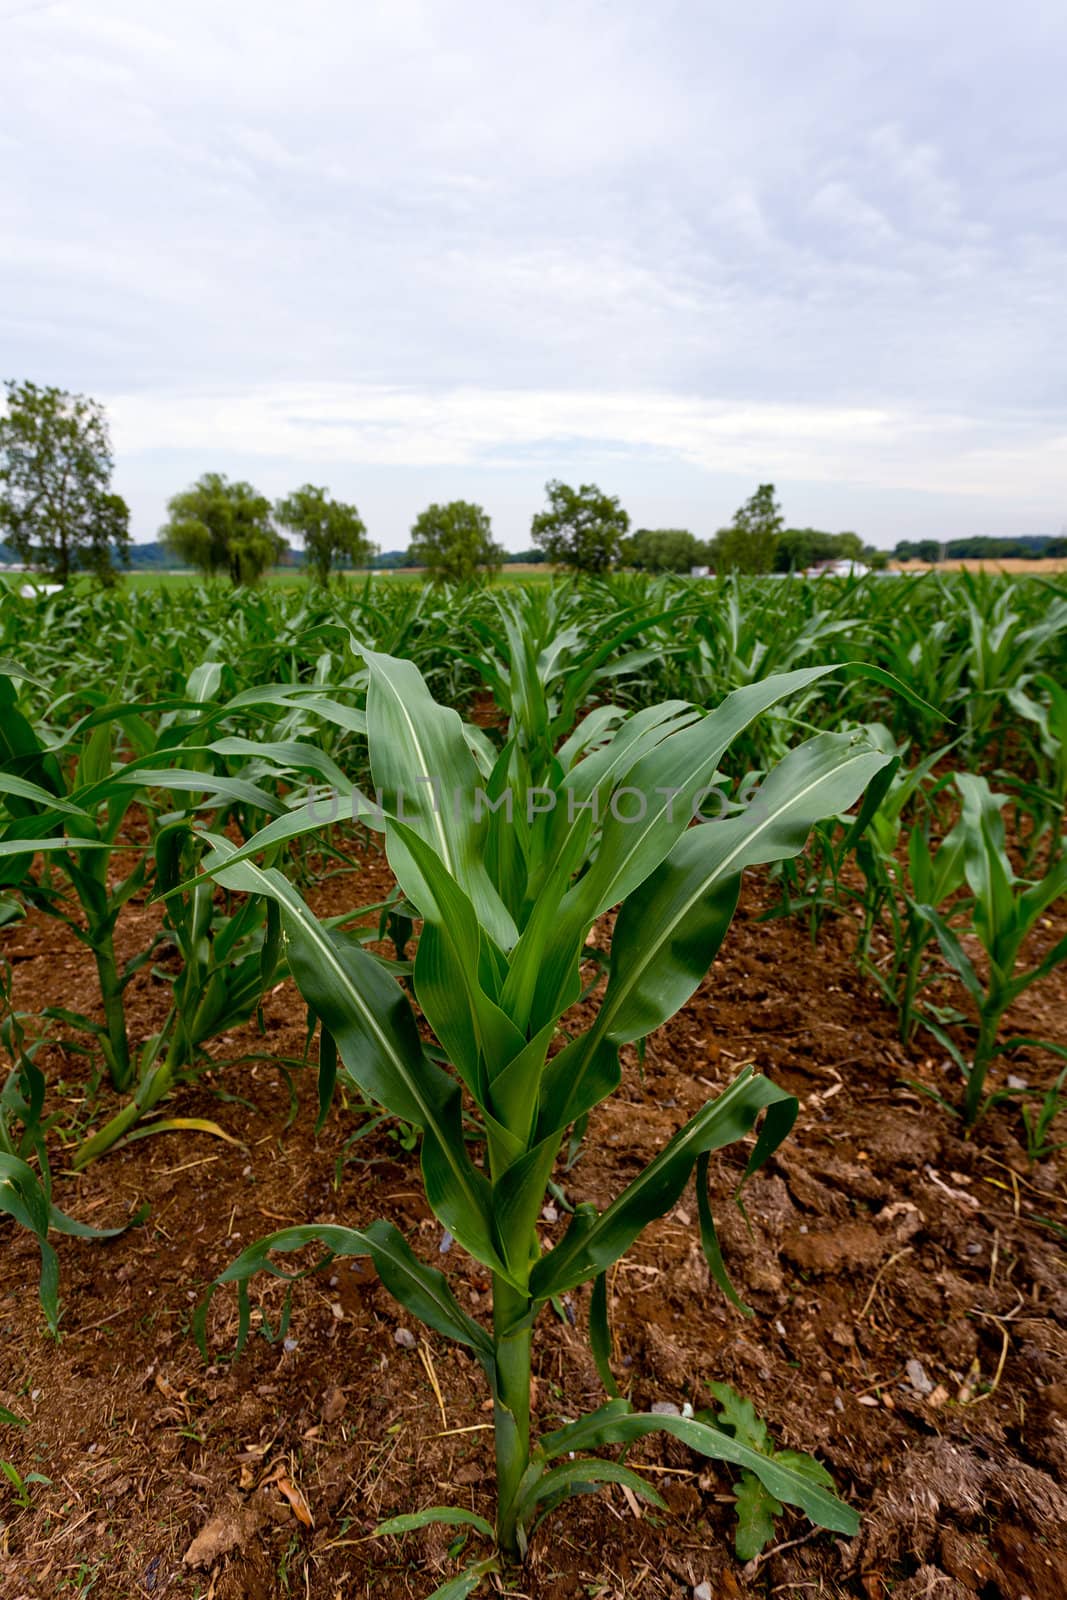 Corn plant in field of plants by steheap